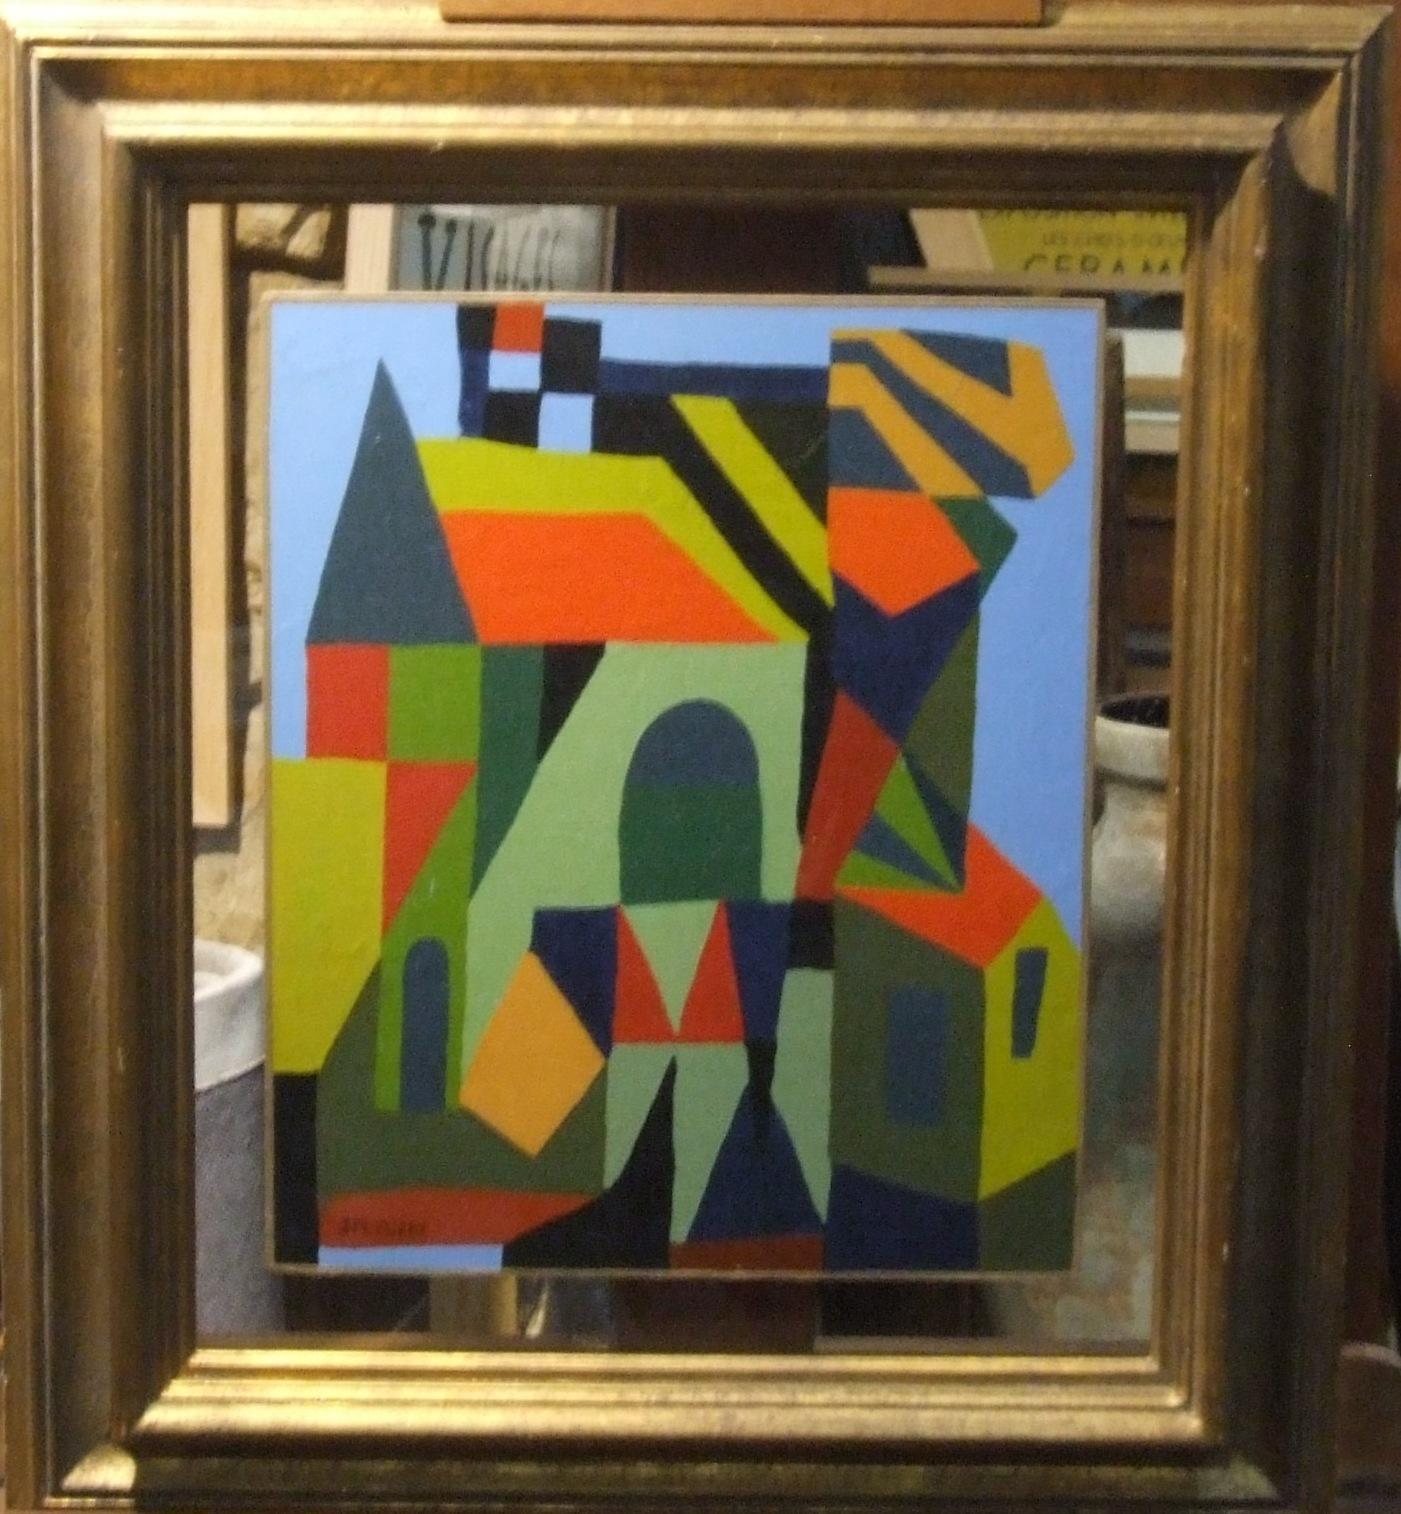 Maison - huile sur panneau, 46x38 cm. - Painting by Jean Marie Euzet